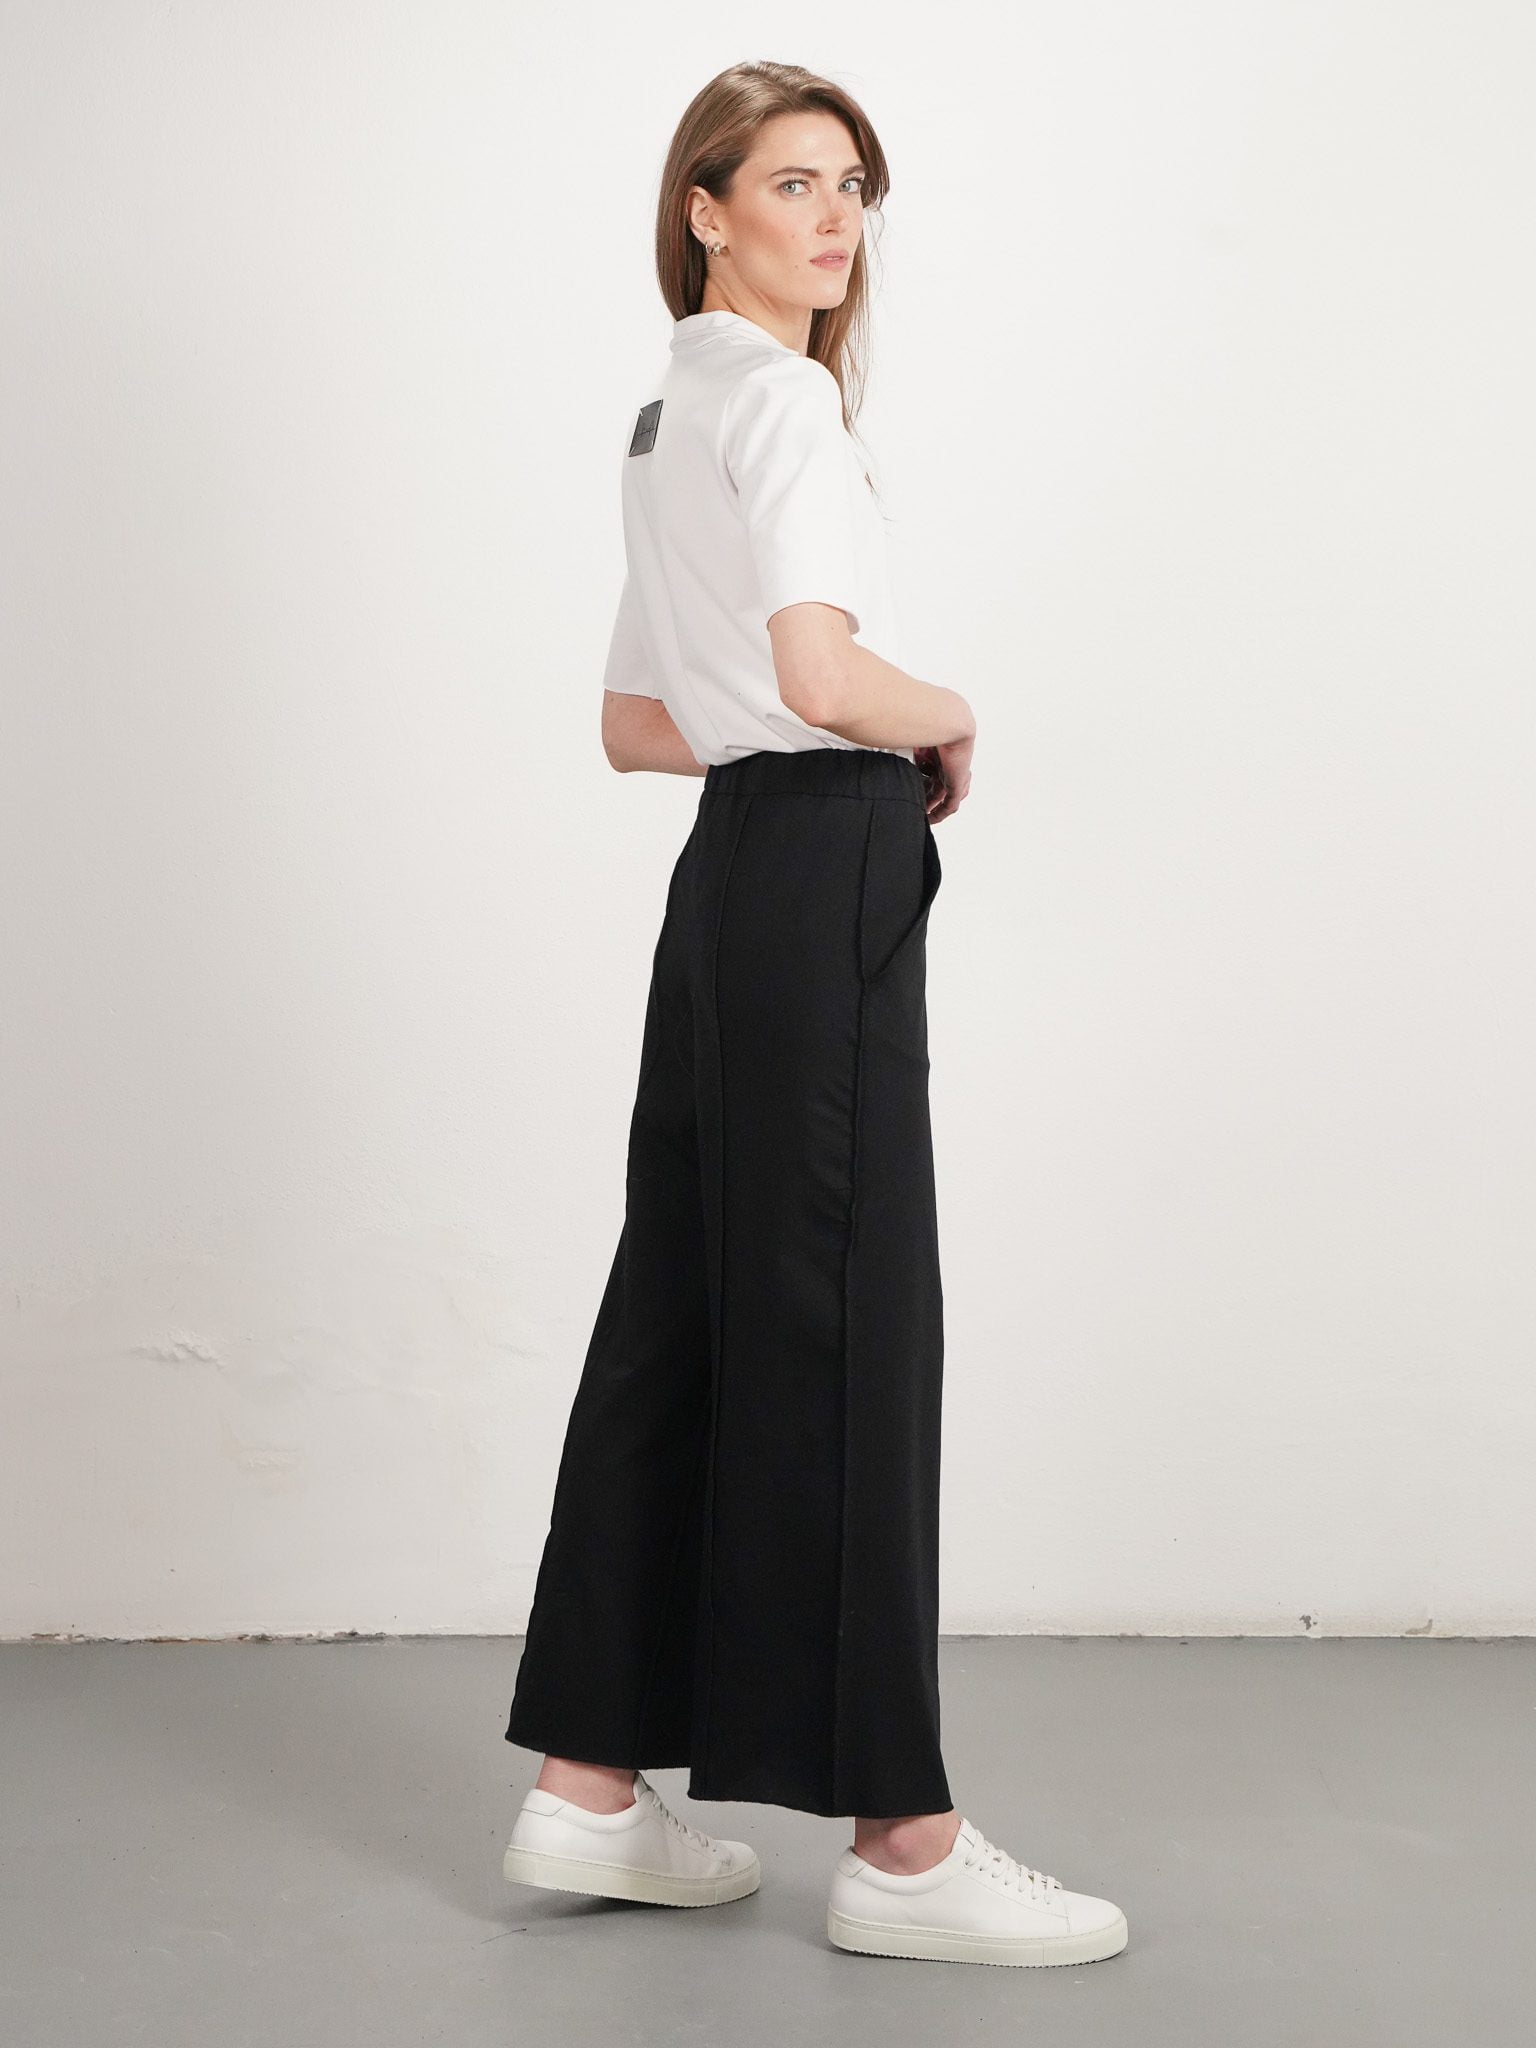 Moda Autorska Slow Fashion BezAle - BezAle spodnie zawsze z toba 3